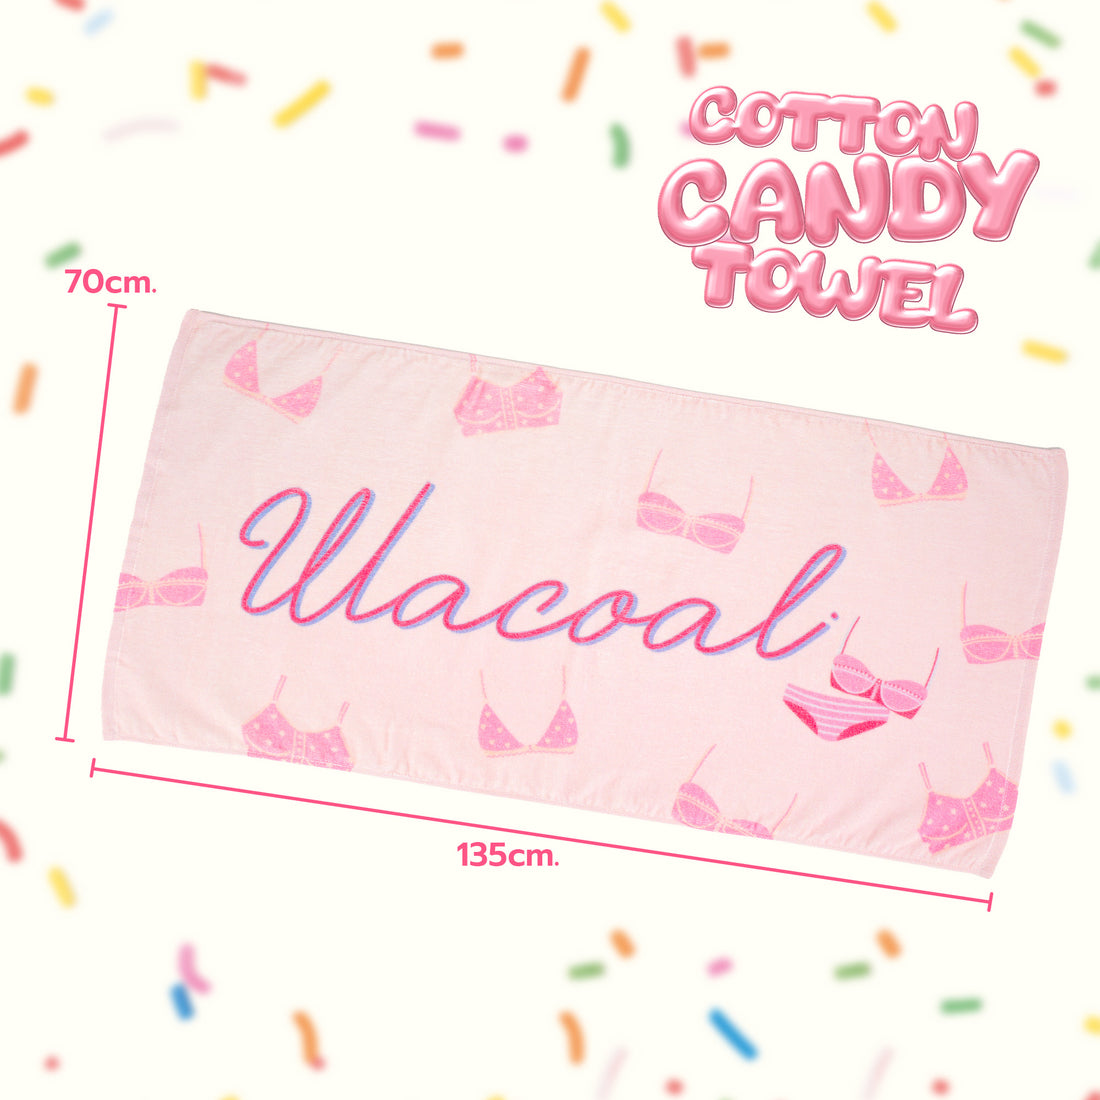 Wacoal Cotton Candy Towel ผ้าขนหนูเช็ดตัว รุ่น WW120400 (มี 2 สี สีชมพู/สีขาว)